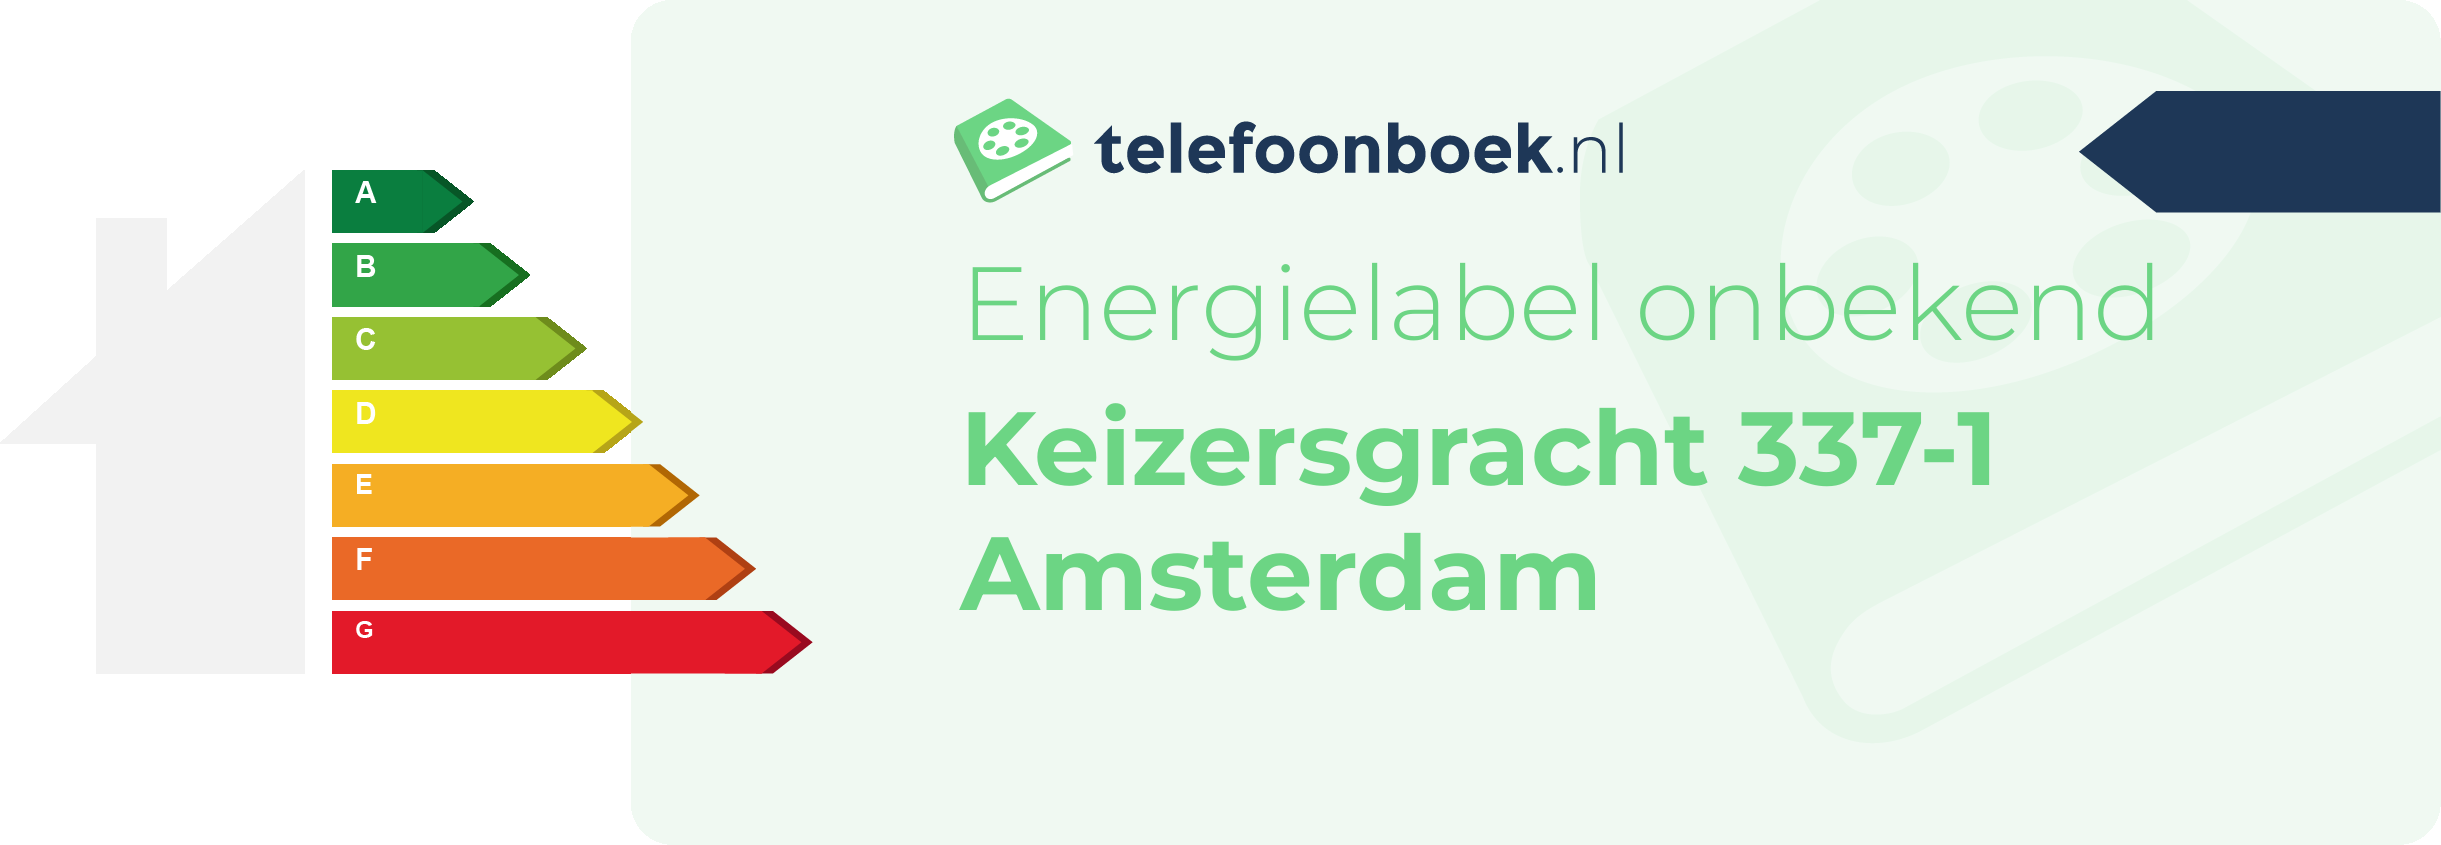 Energielabel Keizersgracht 337-1 Amsterdam